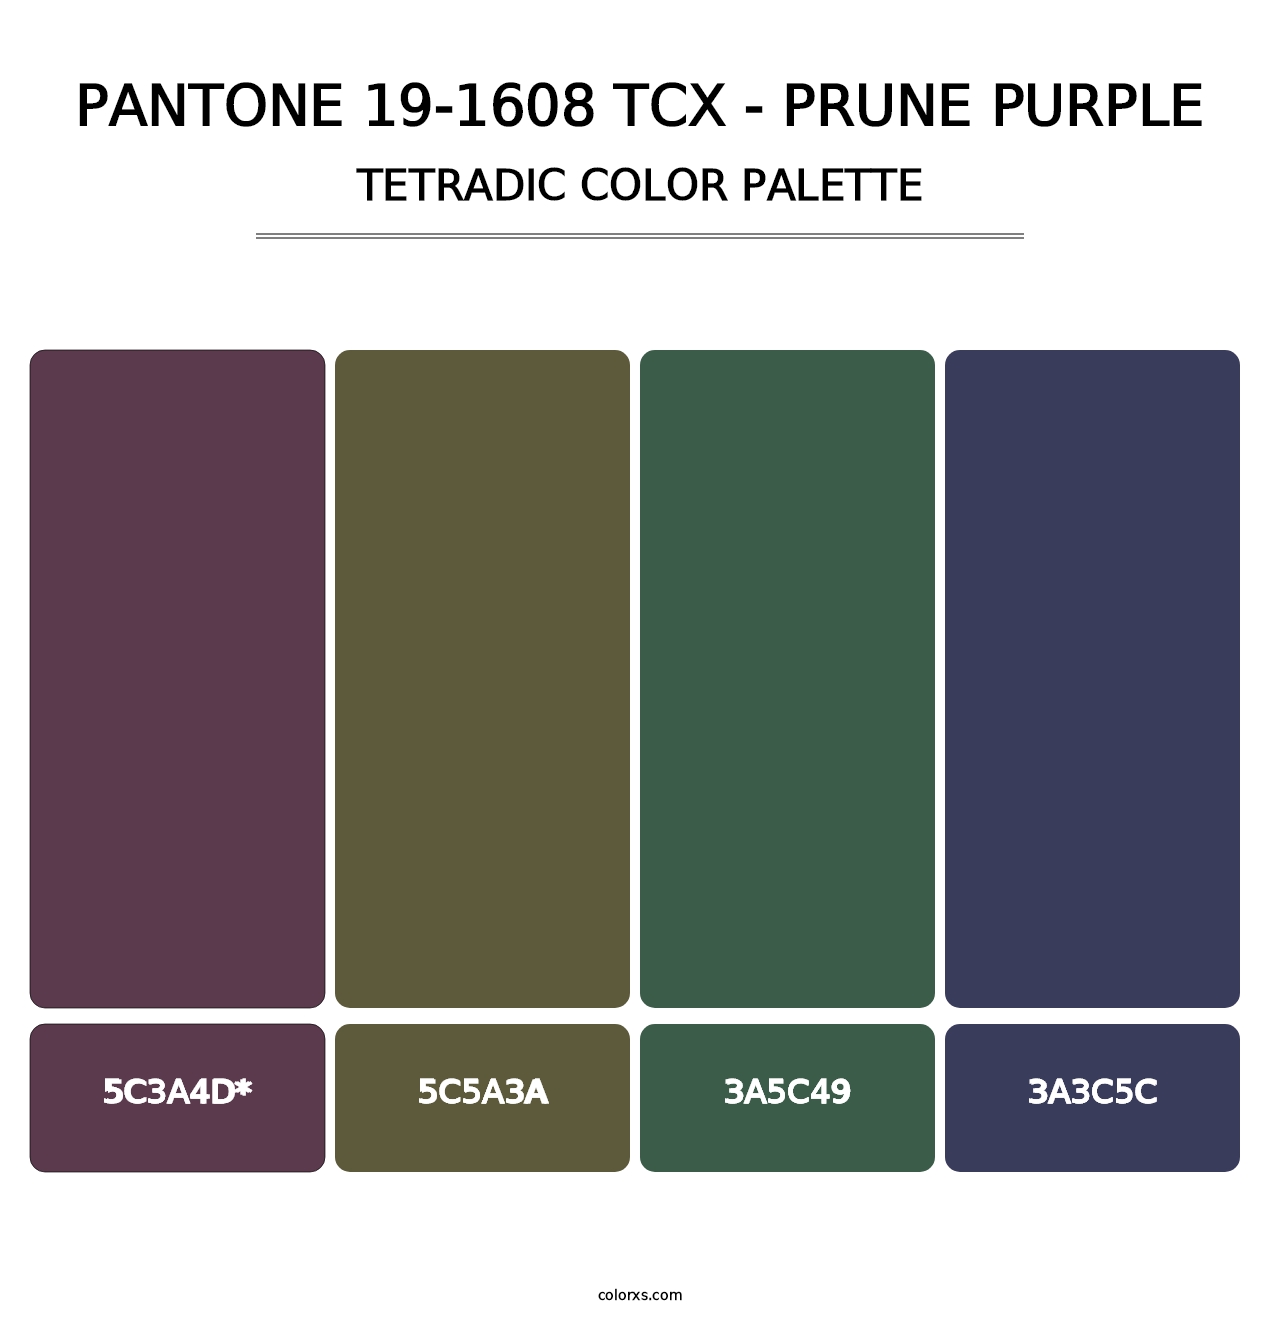 PANTONE 19-1608 TCX - Prune Purple - Tetradic Color Palette